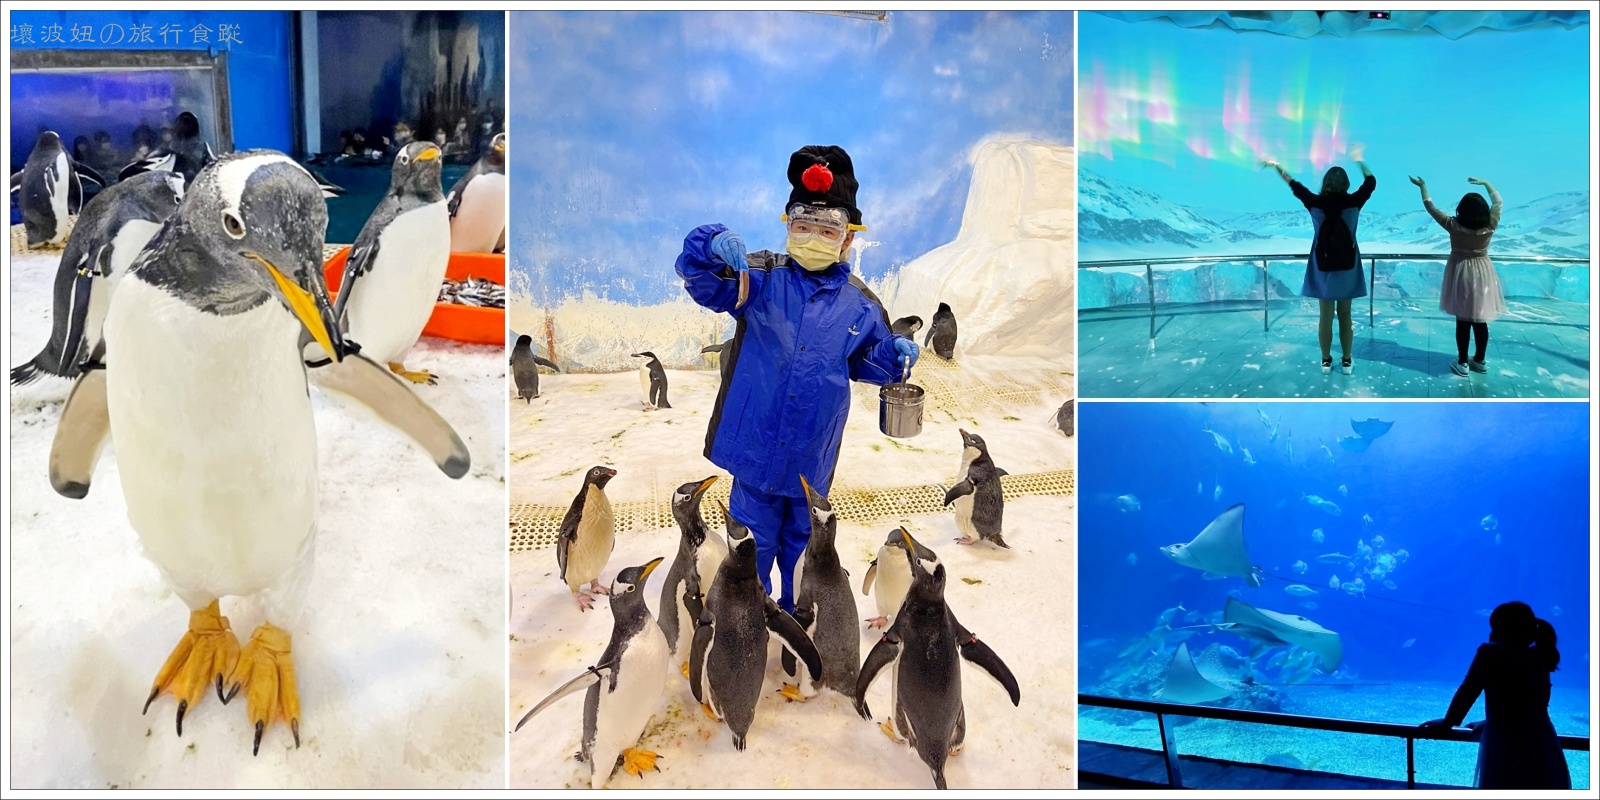 【屏東親子景點】我與企鵝的0.1毫米｜企鵝飼育照護體驗 - 絕對秒殺的屏東海生館餵企鵝體驗 - 屏東海生館 新設施 - 壞波妞の旅行食踨